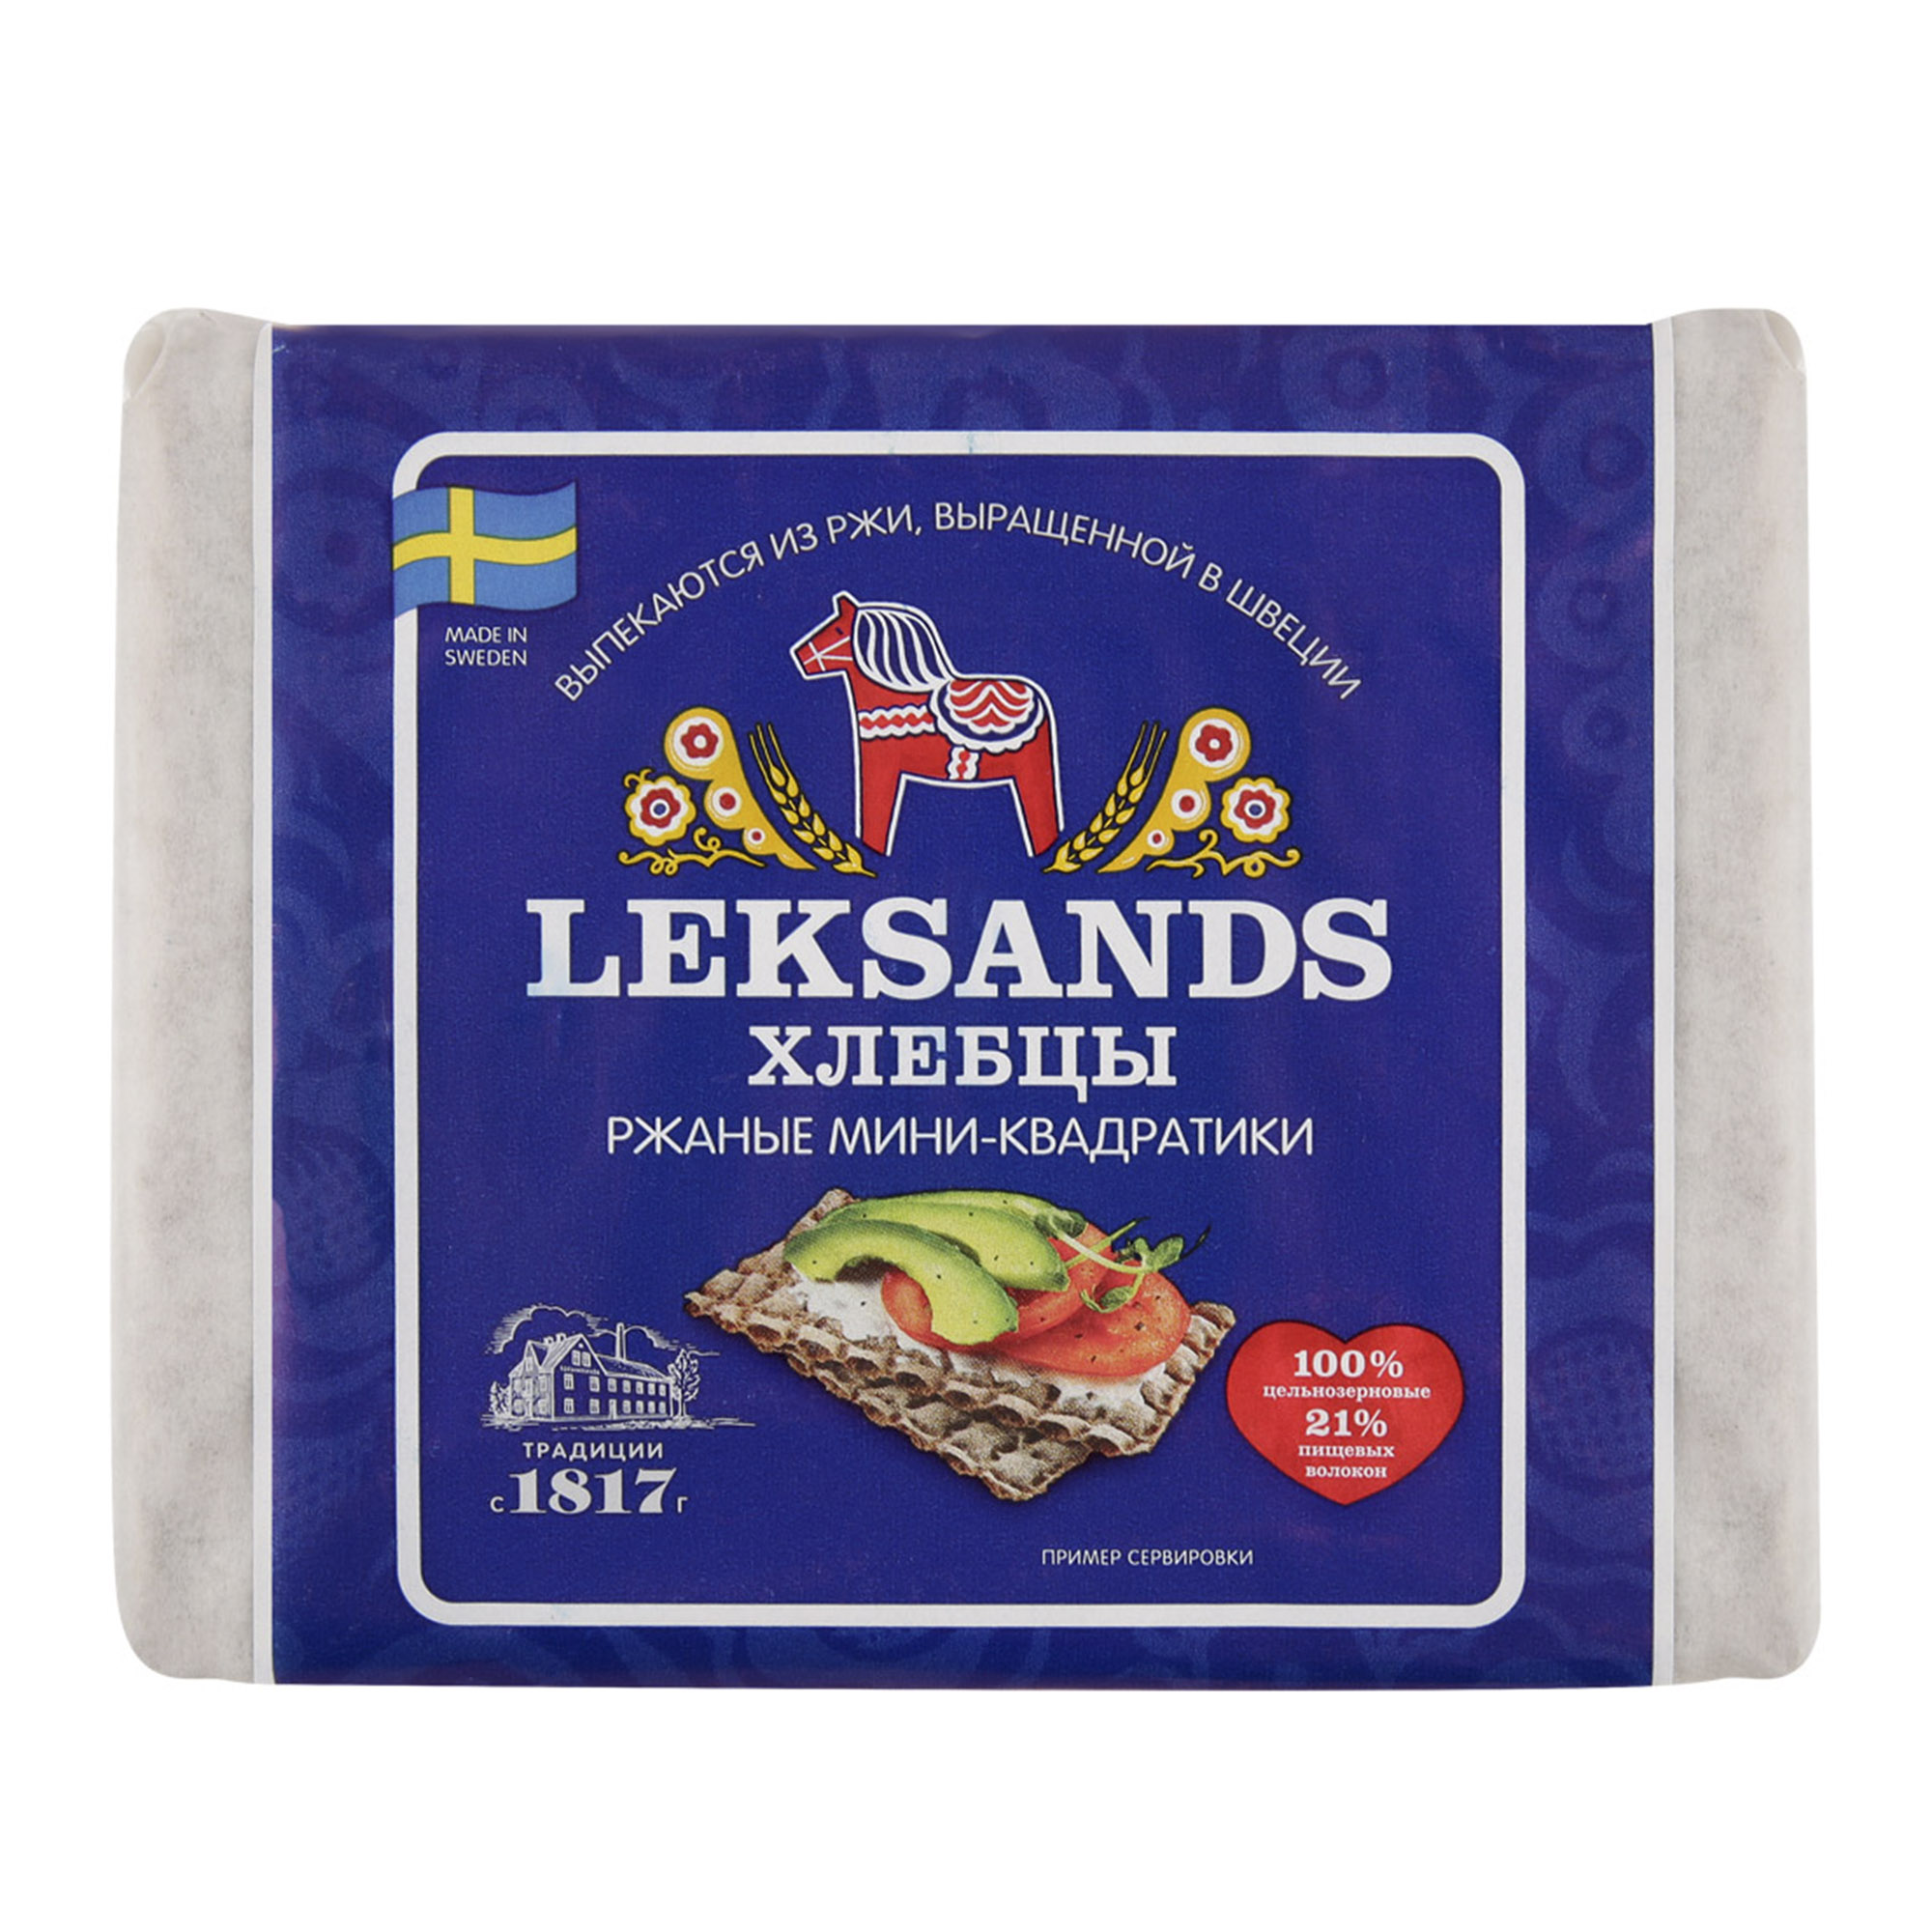 Хлебцы Leksands Ржаные мини-квадратики 200 г - фото 1